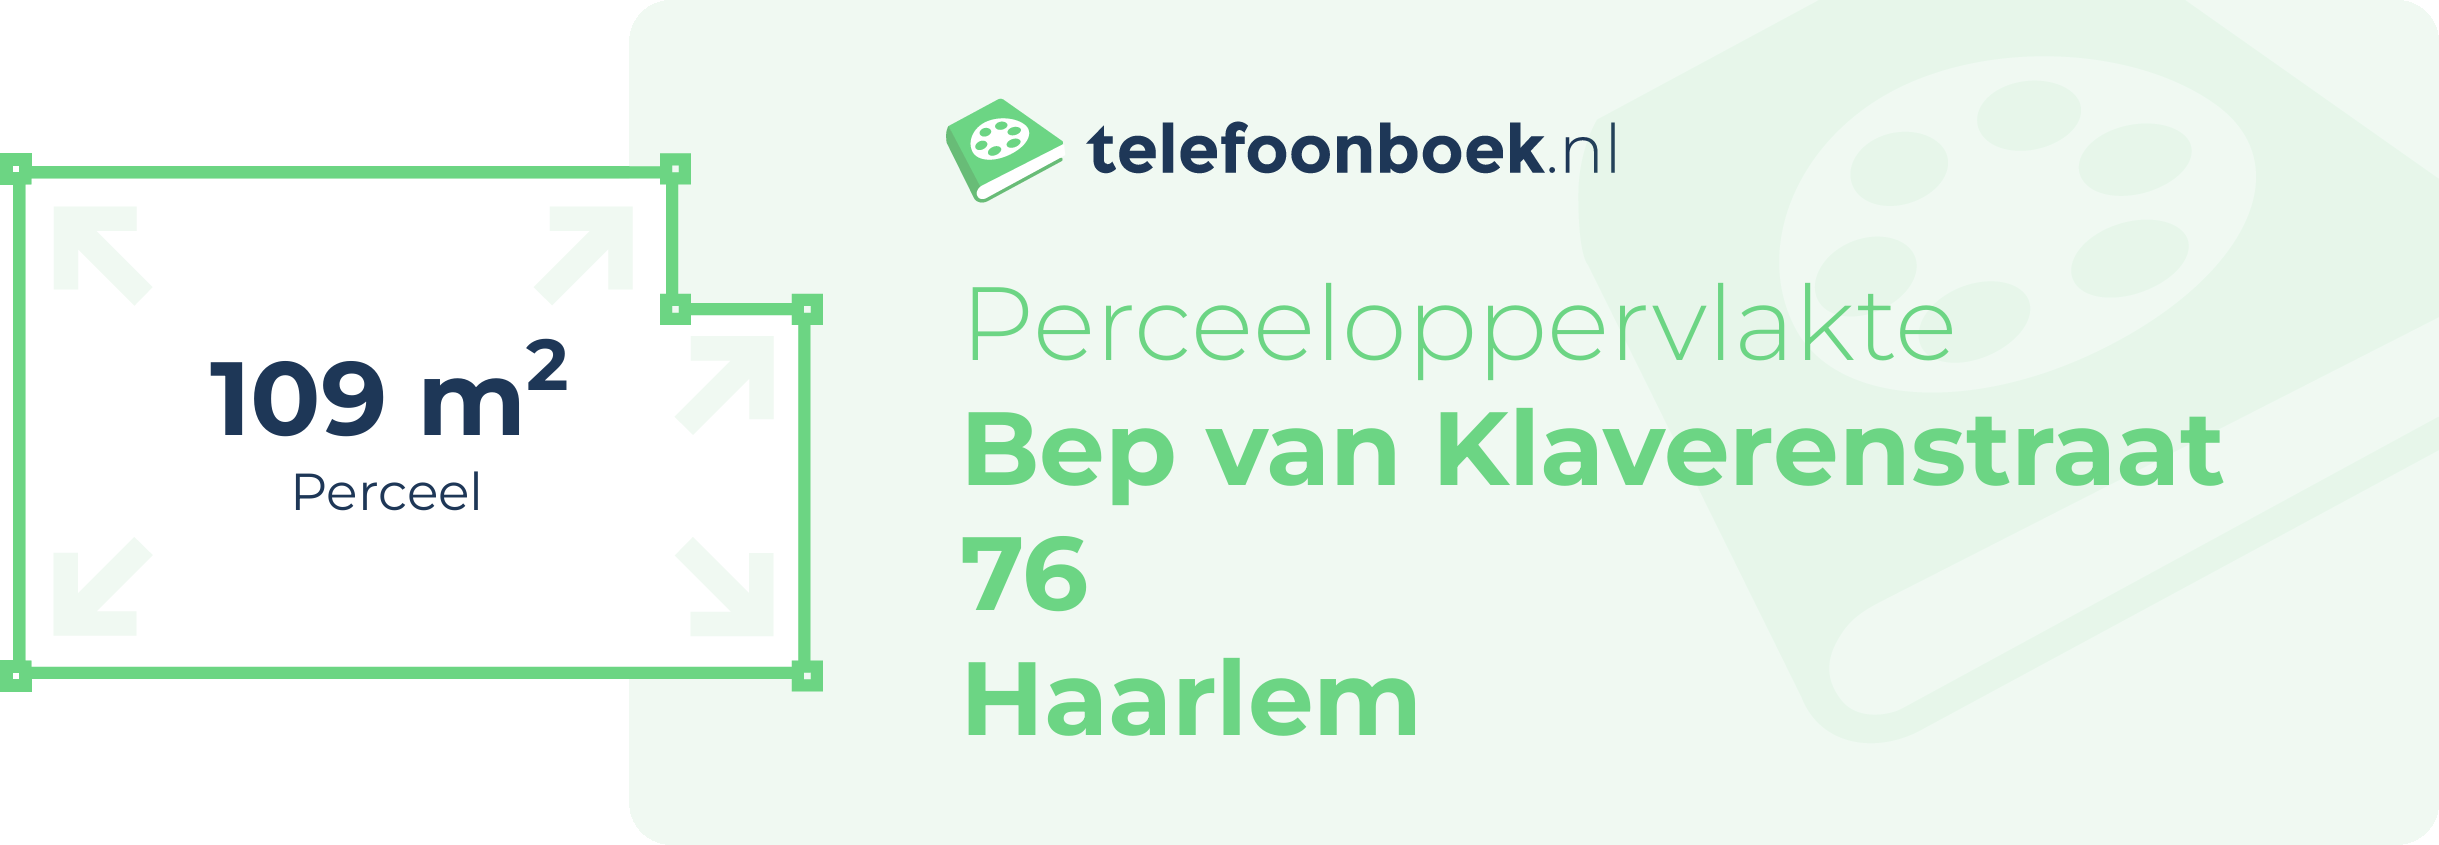 Perceeloppervlakte Bep Van Klaverenstraat 76 Haarlem